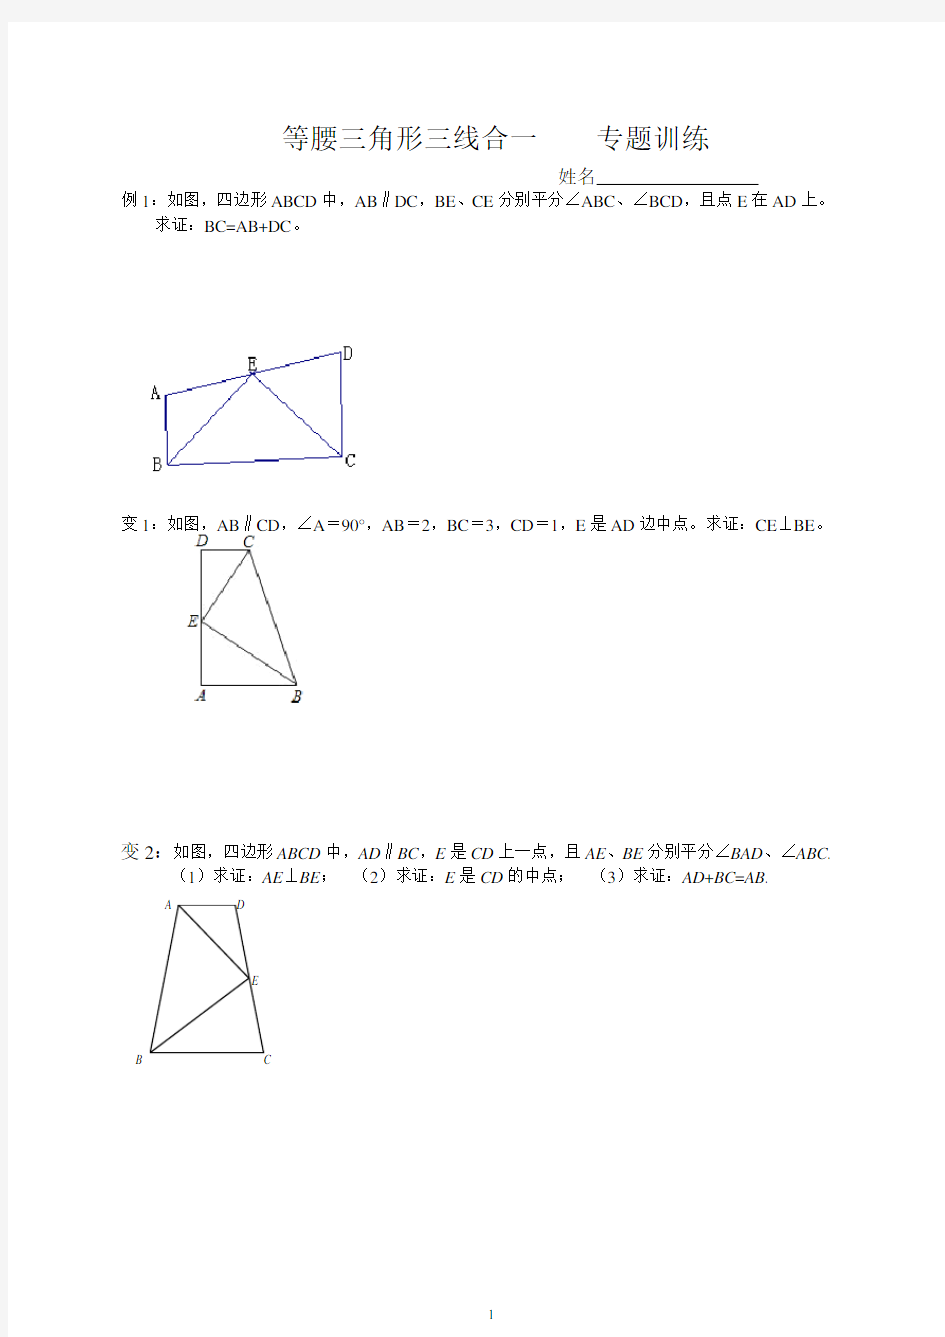 等腰三角形三线合一典型题型[1]